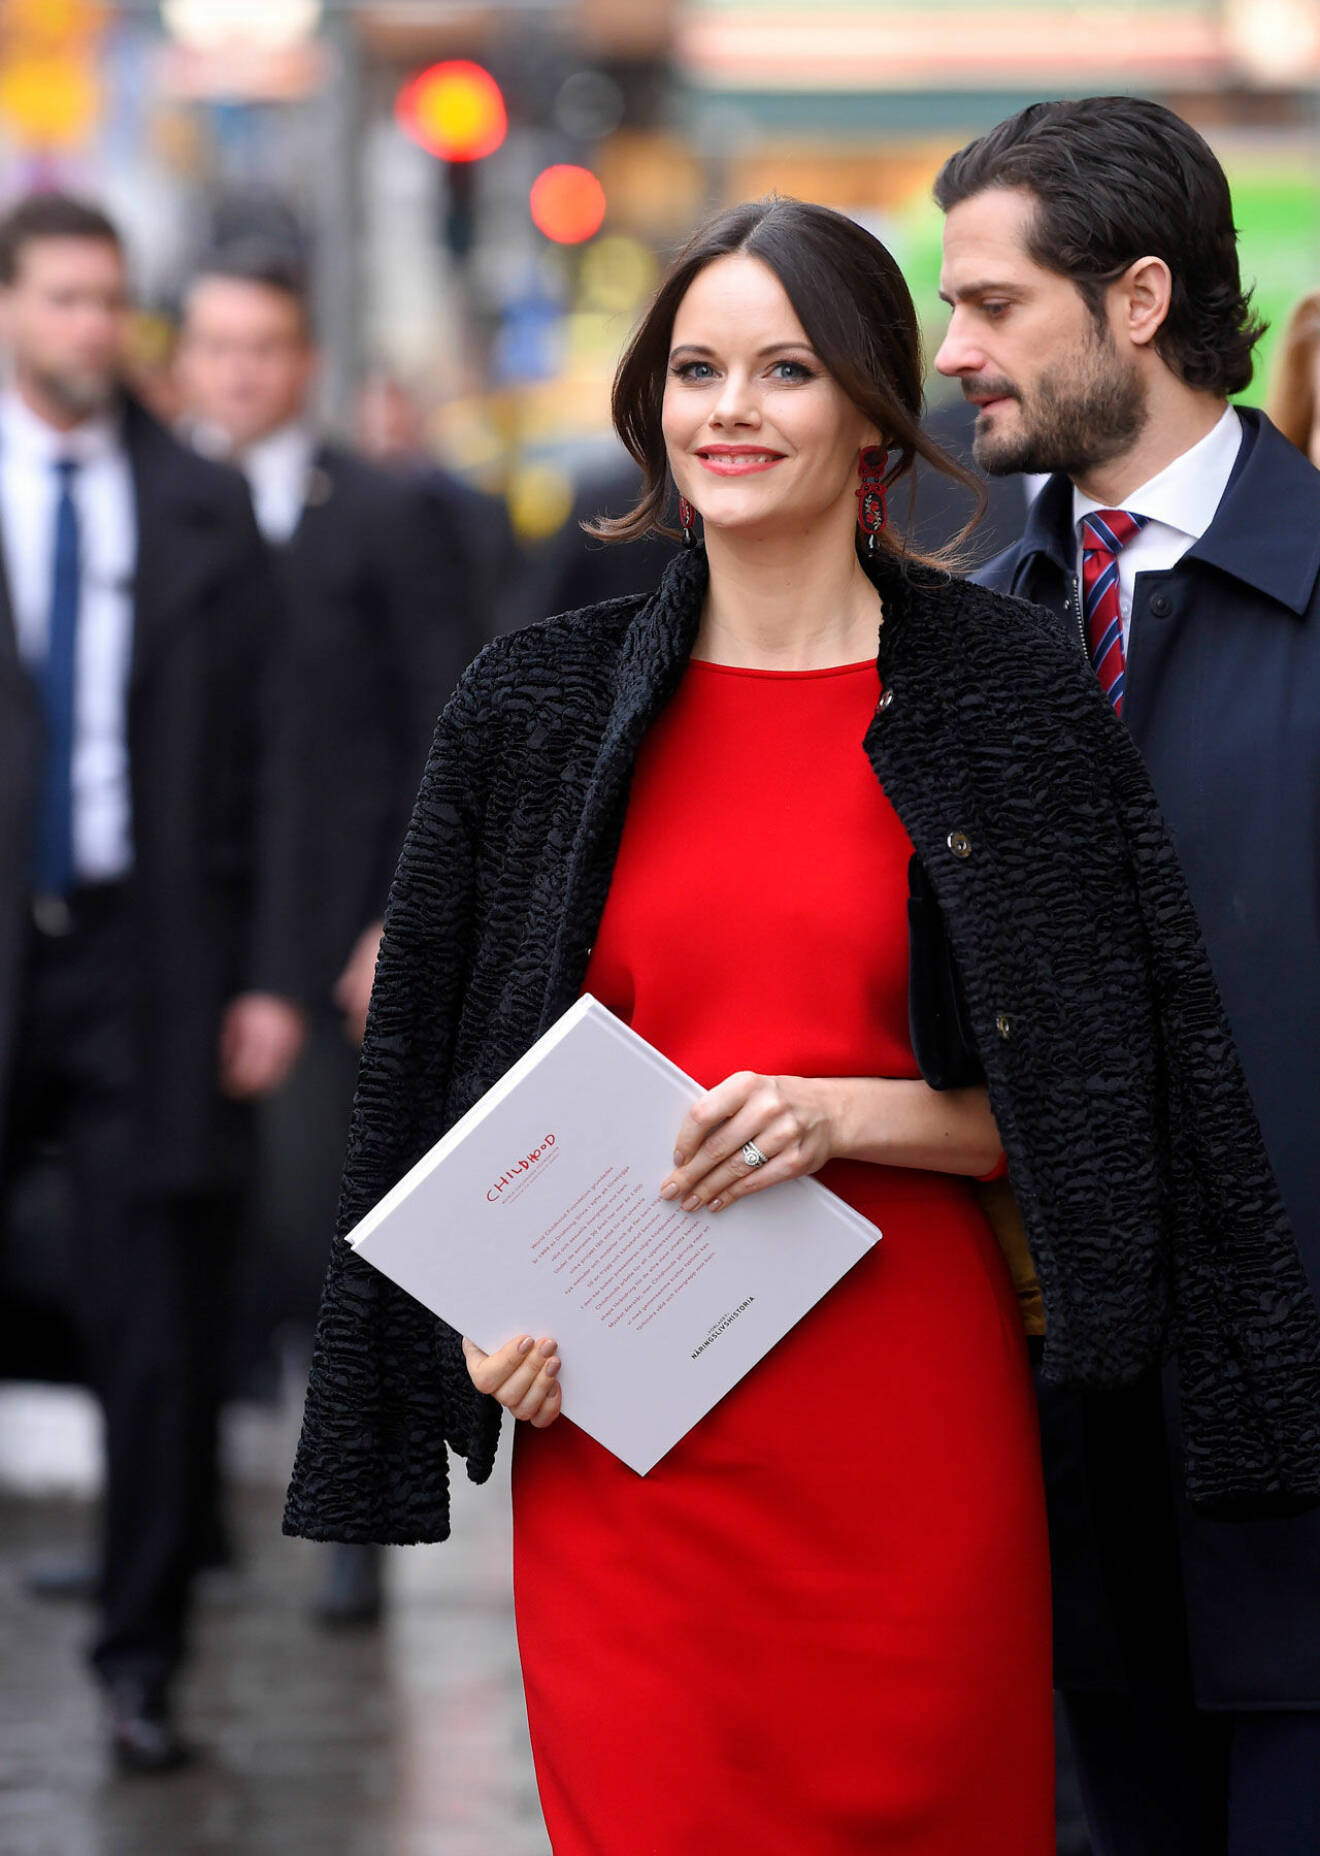 Sofia i röd klänning